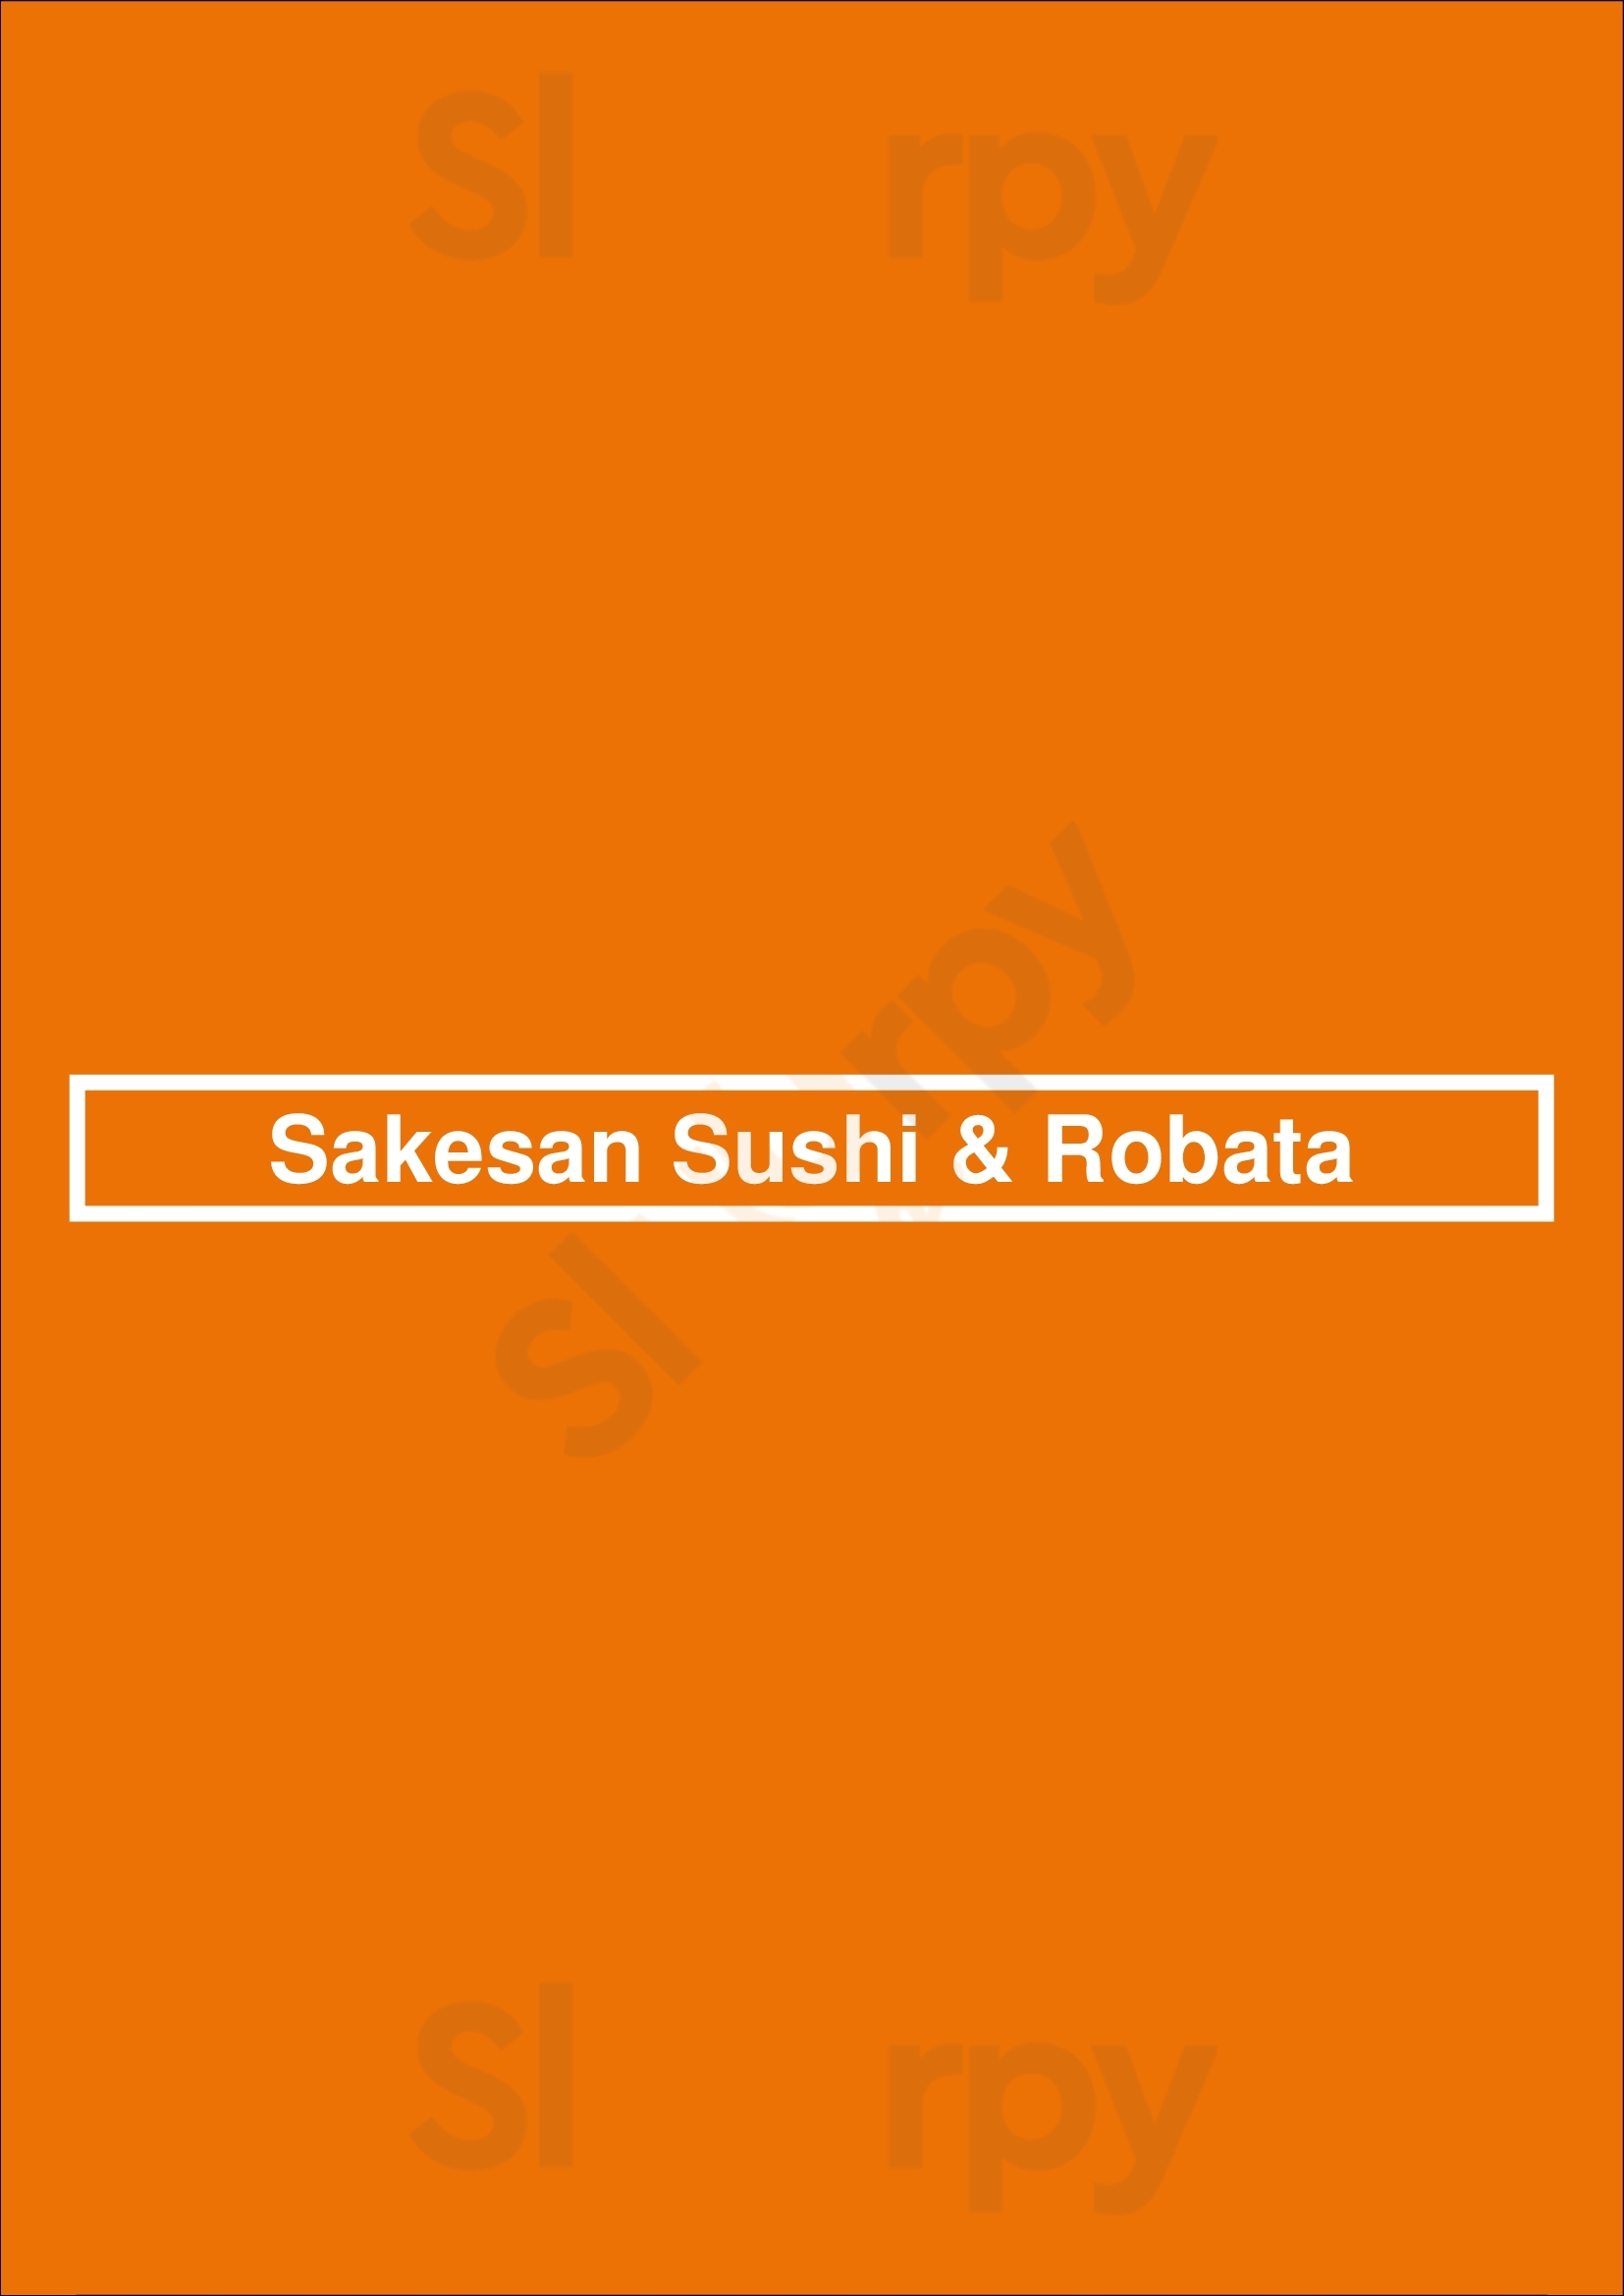 Sakesan Sushi & Robata San Francisco Menu - 1